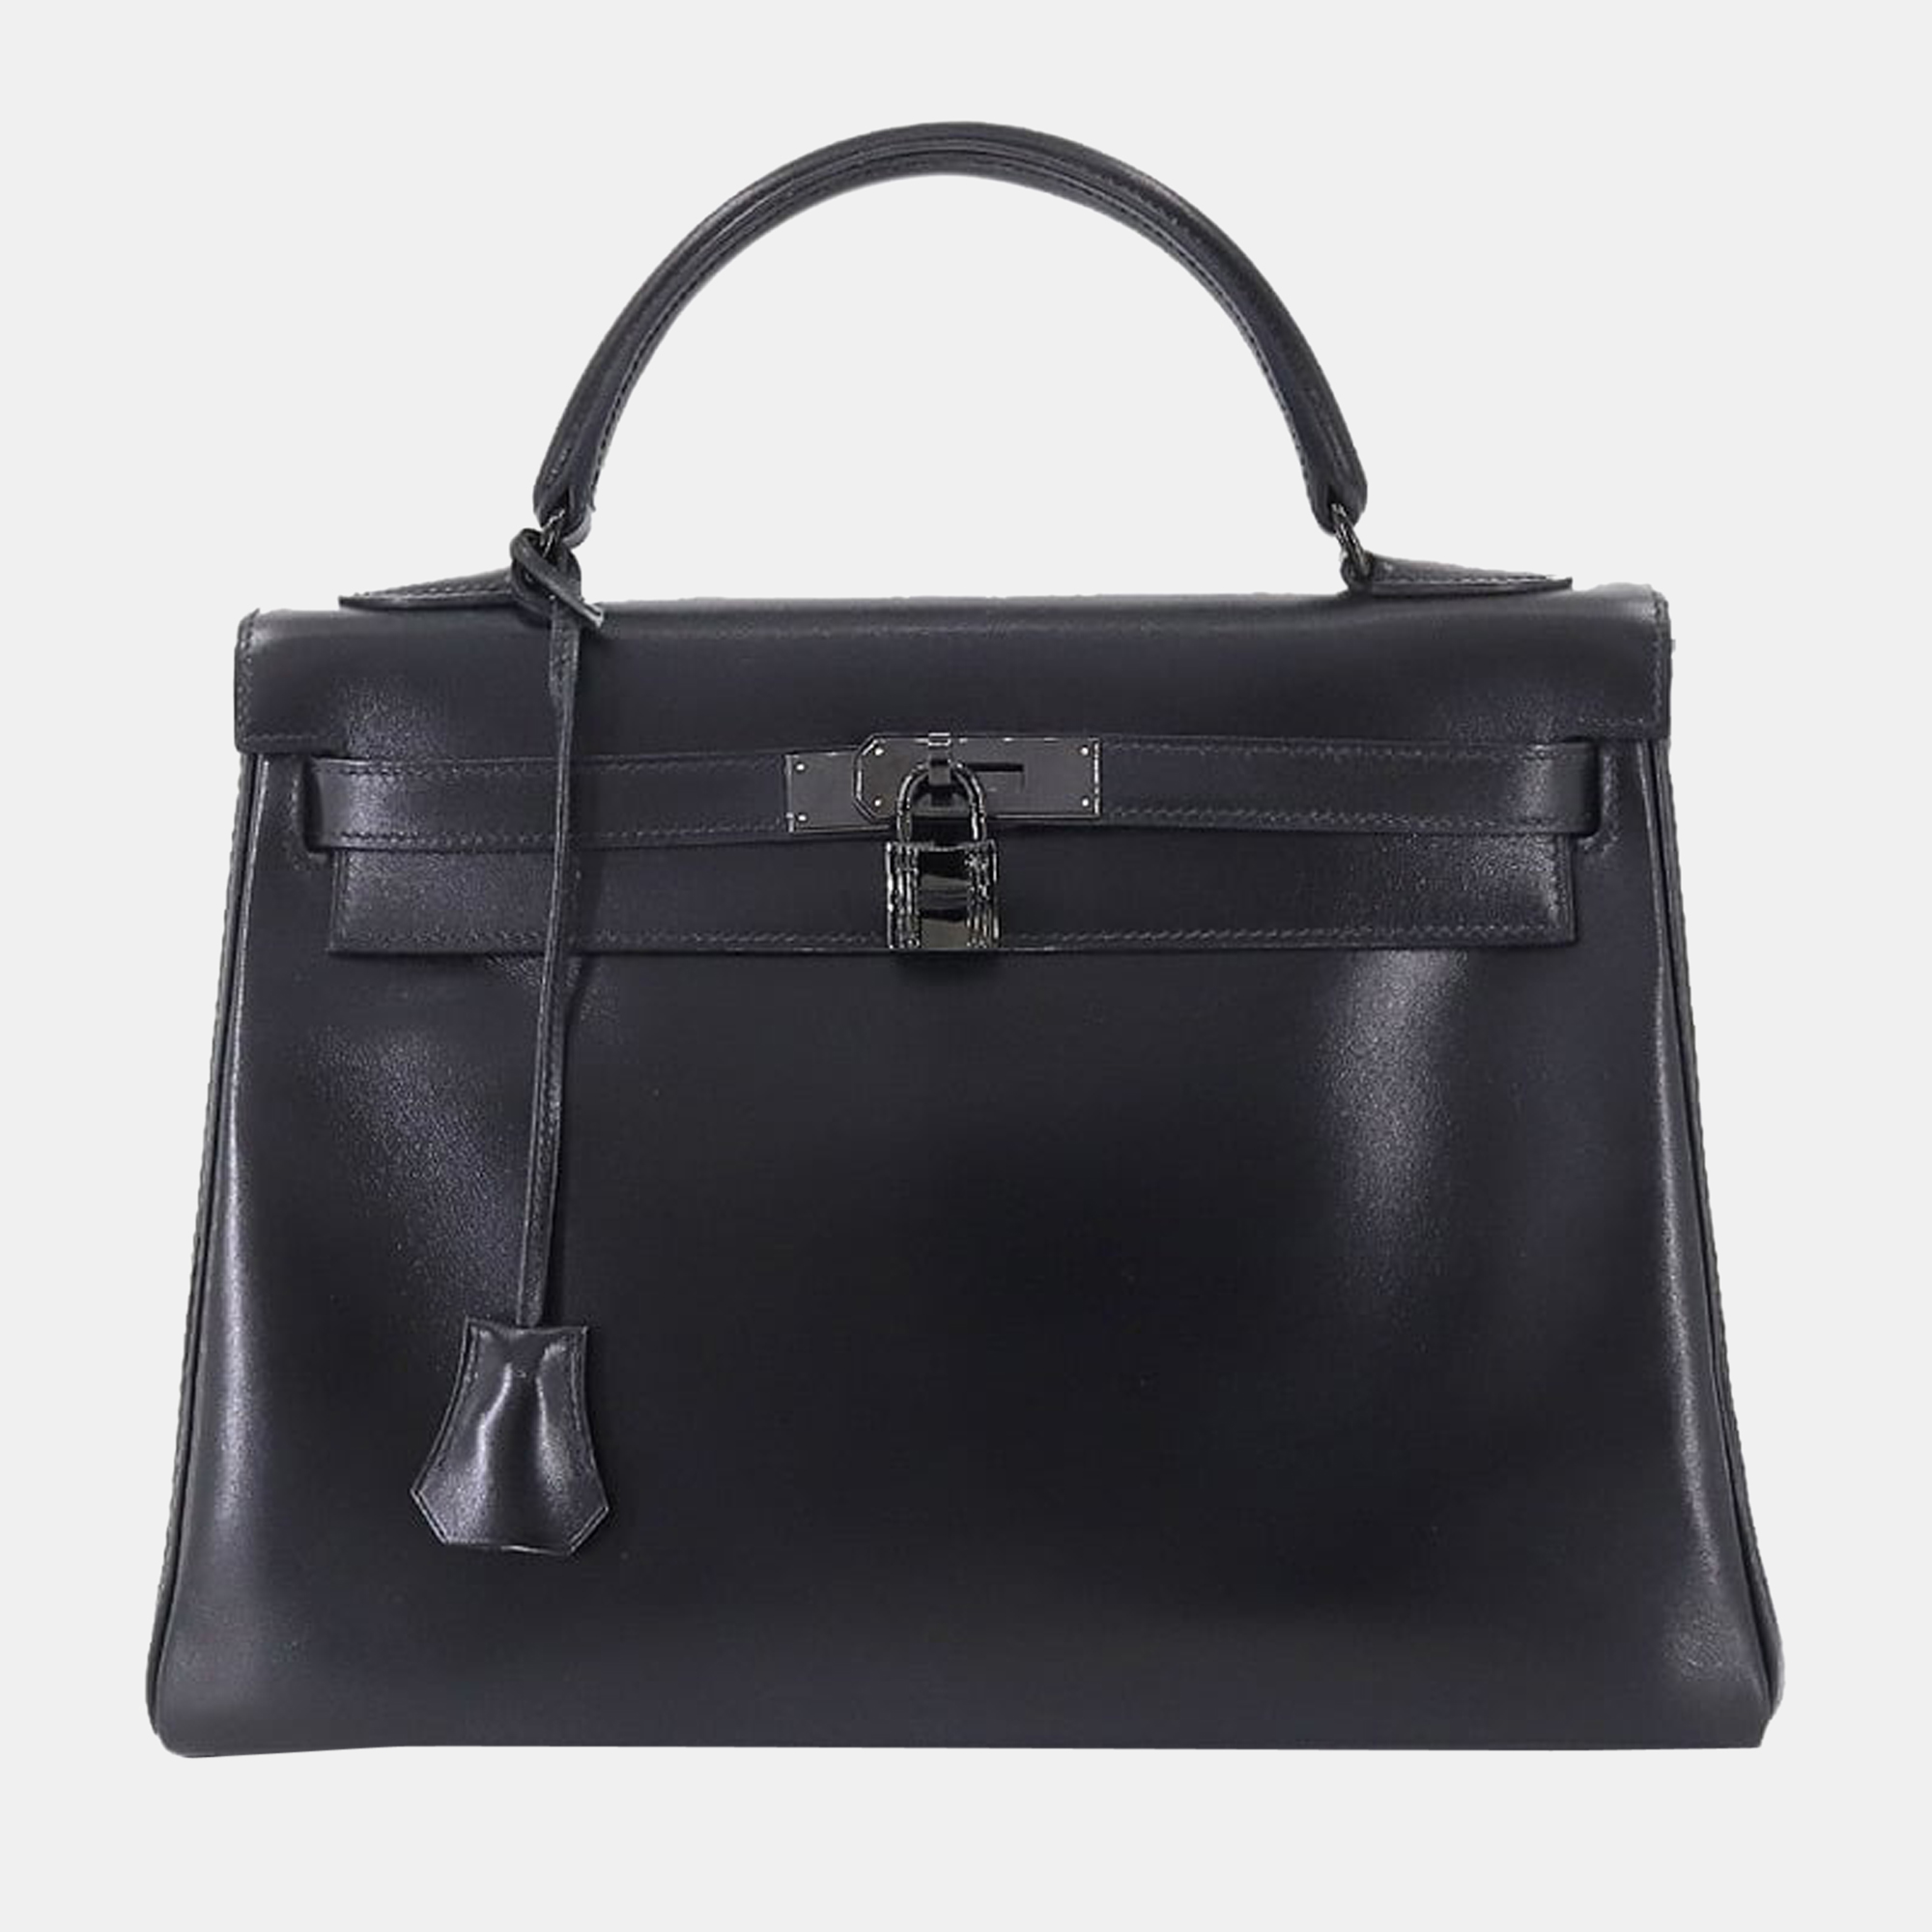 Pre-owned Hermes Kelly 32 Hand Bag Box Calf So Black N Stamped Inner Seam Metal Fittings